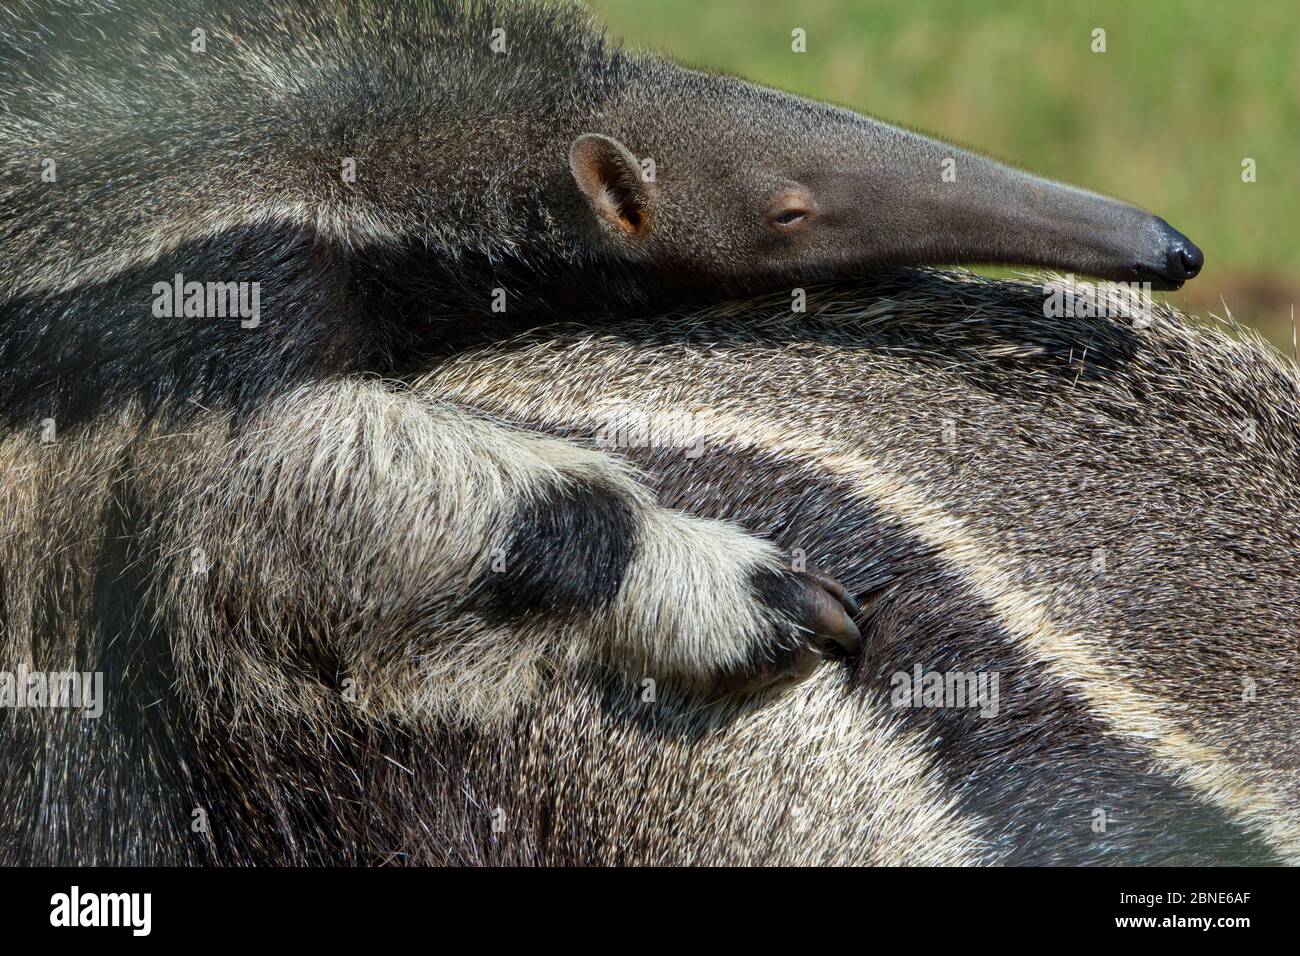 L'anteater gigante (Myrmecophaga tridactyla) bambino che riposa sulla schiena della madre, prigioniero, si verifica in America centrale e del Sud. Specie vulnerabile. Foto Stock